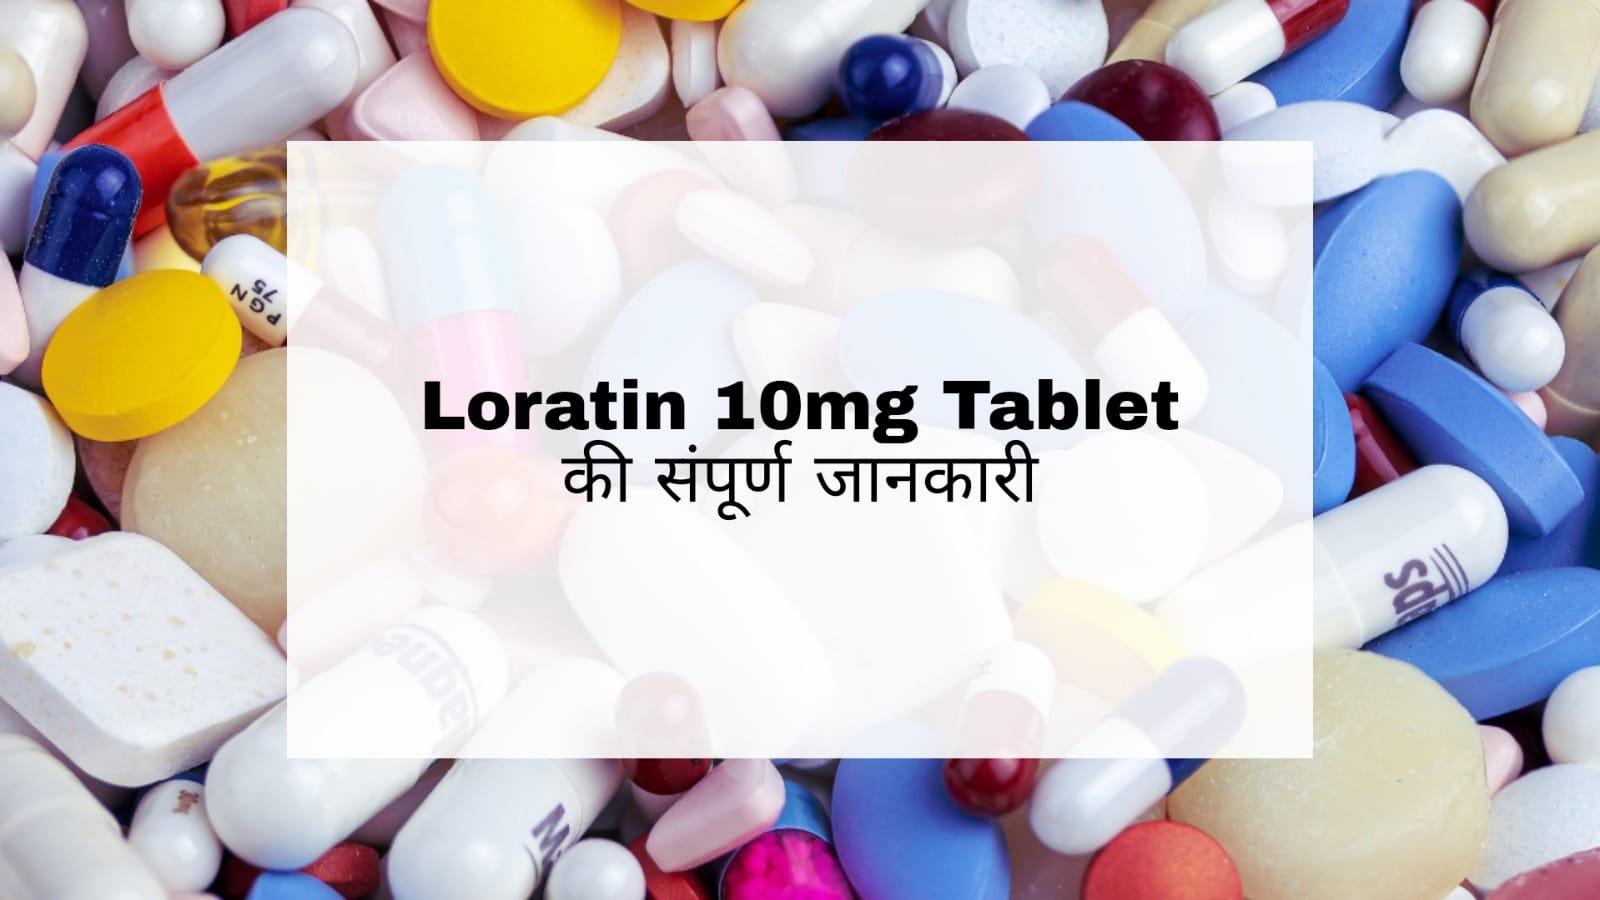 Loratin 10mg Tablet in Hindi: सर्दी जुकाम में असरदार